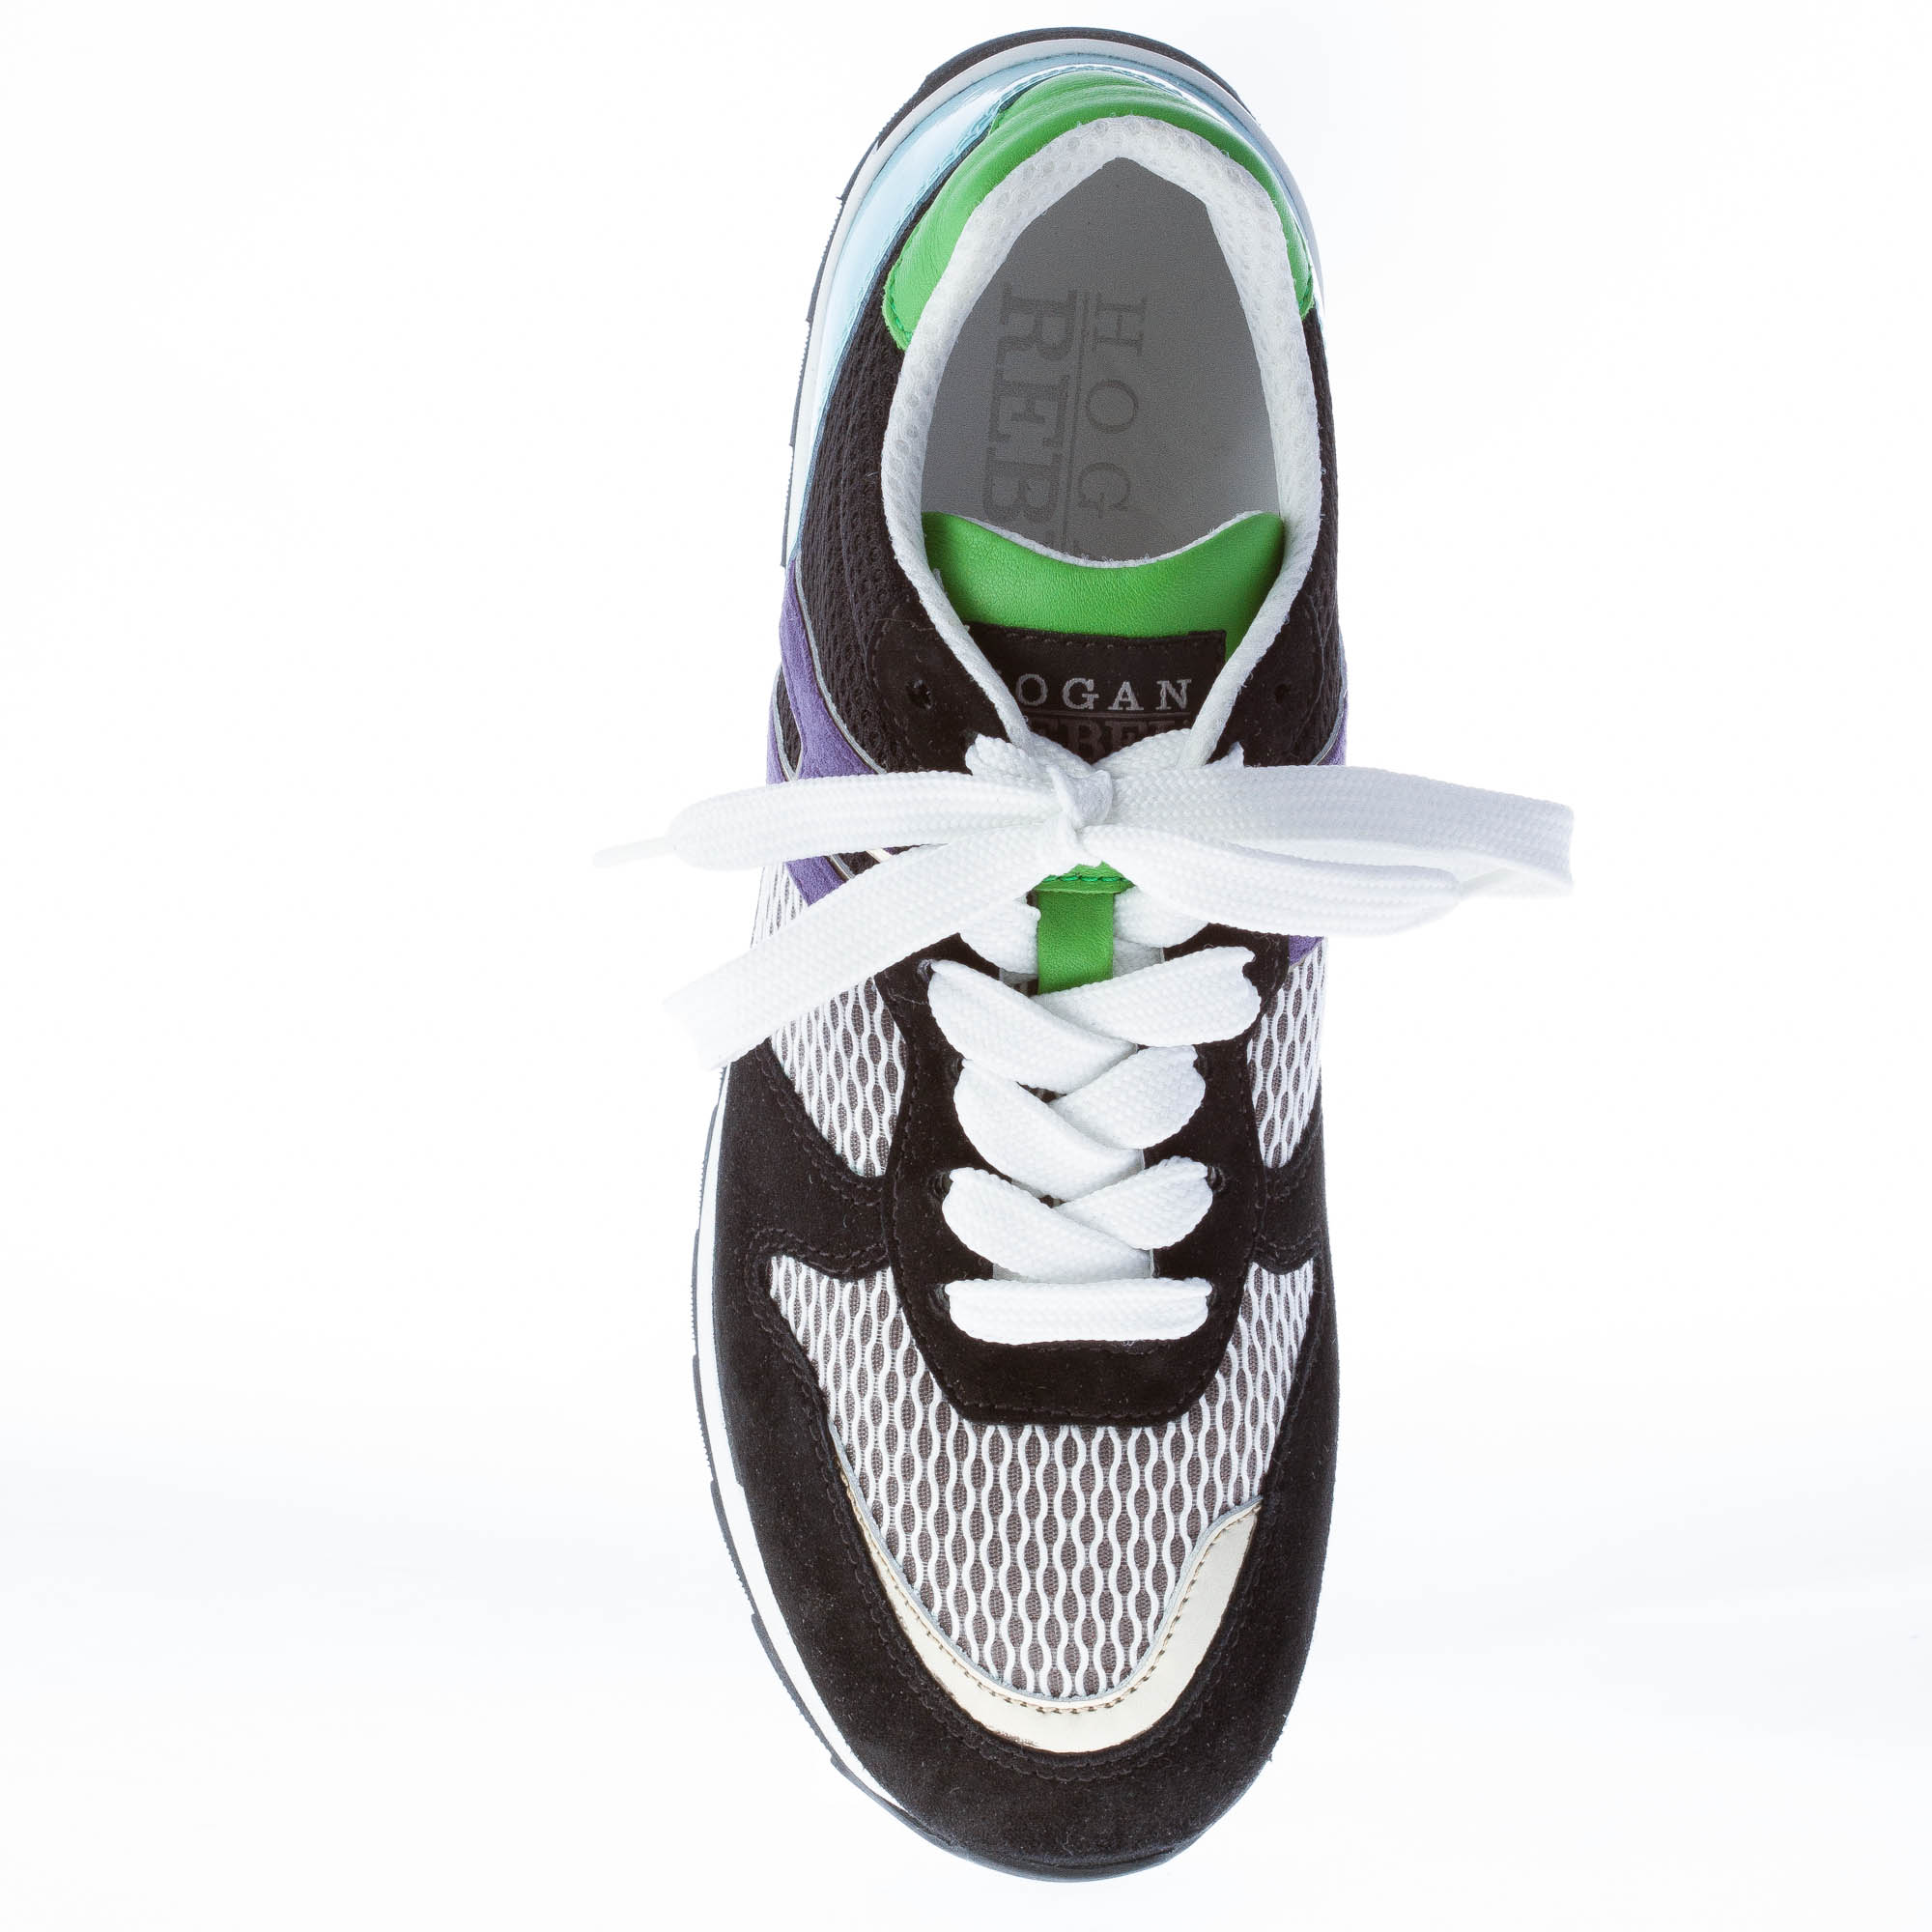 HOGAN scarpe donna Sneaker R261 multicolore nero bianco turchese verde viola 